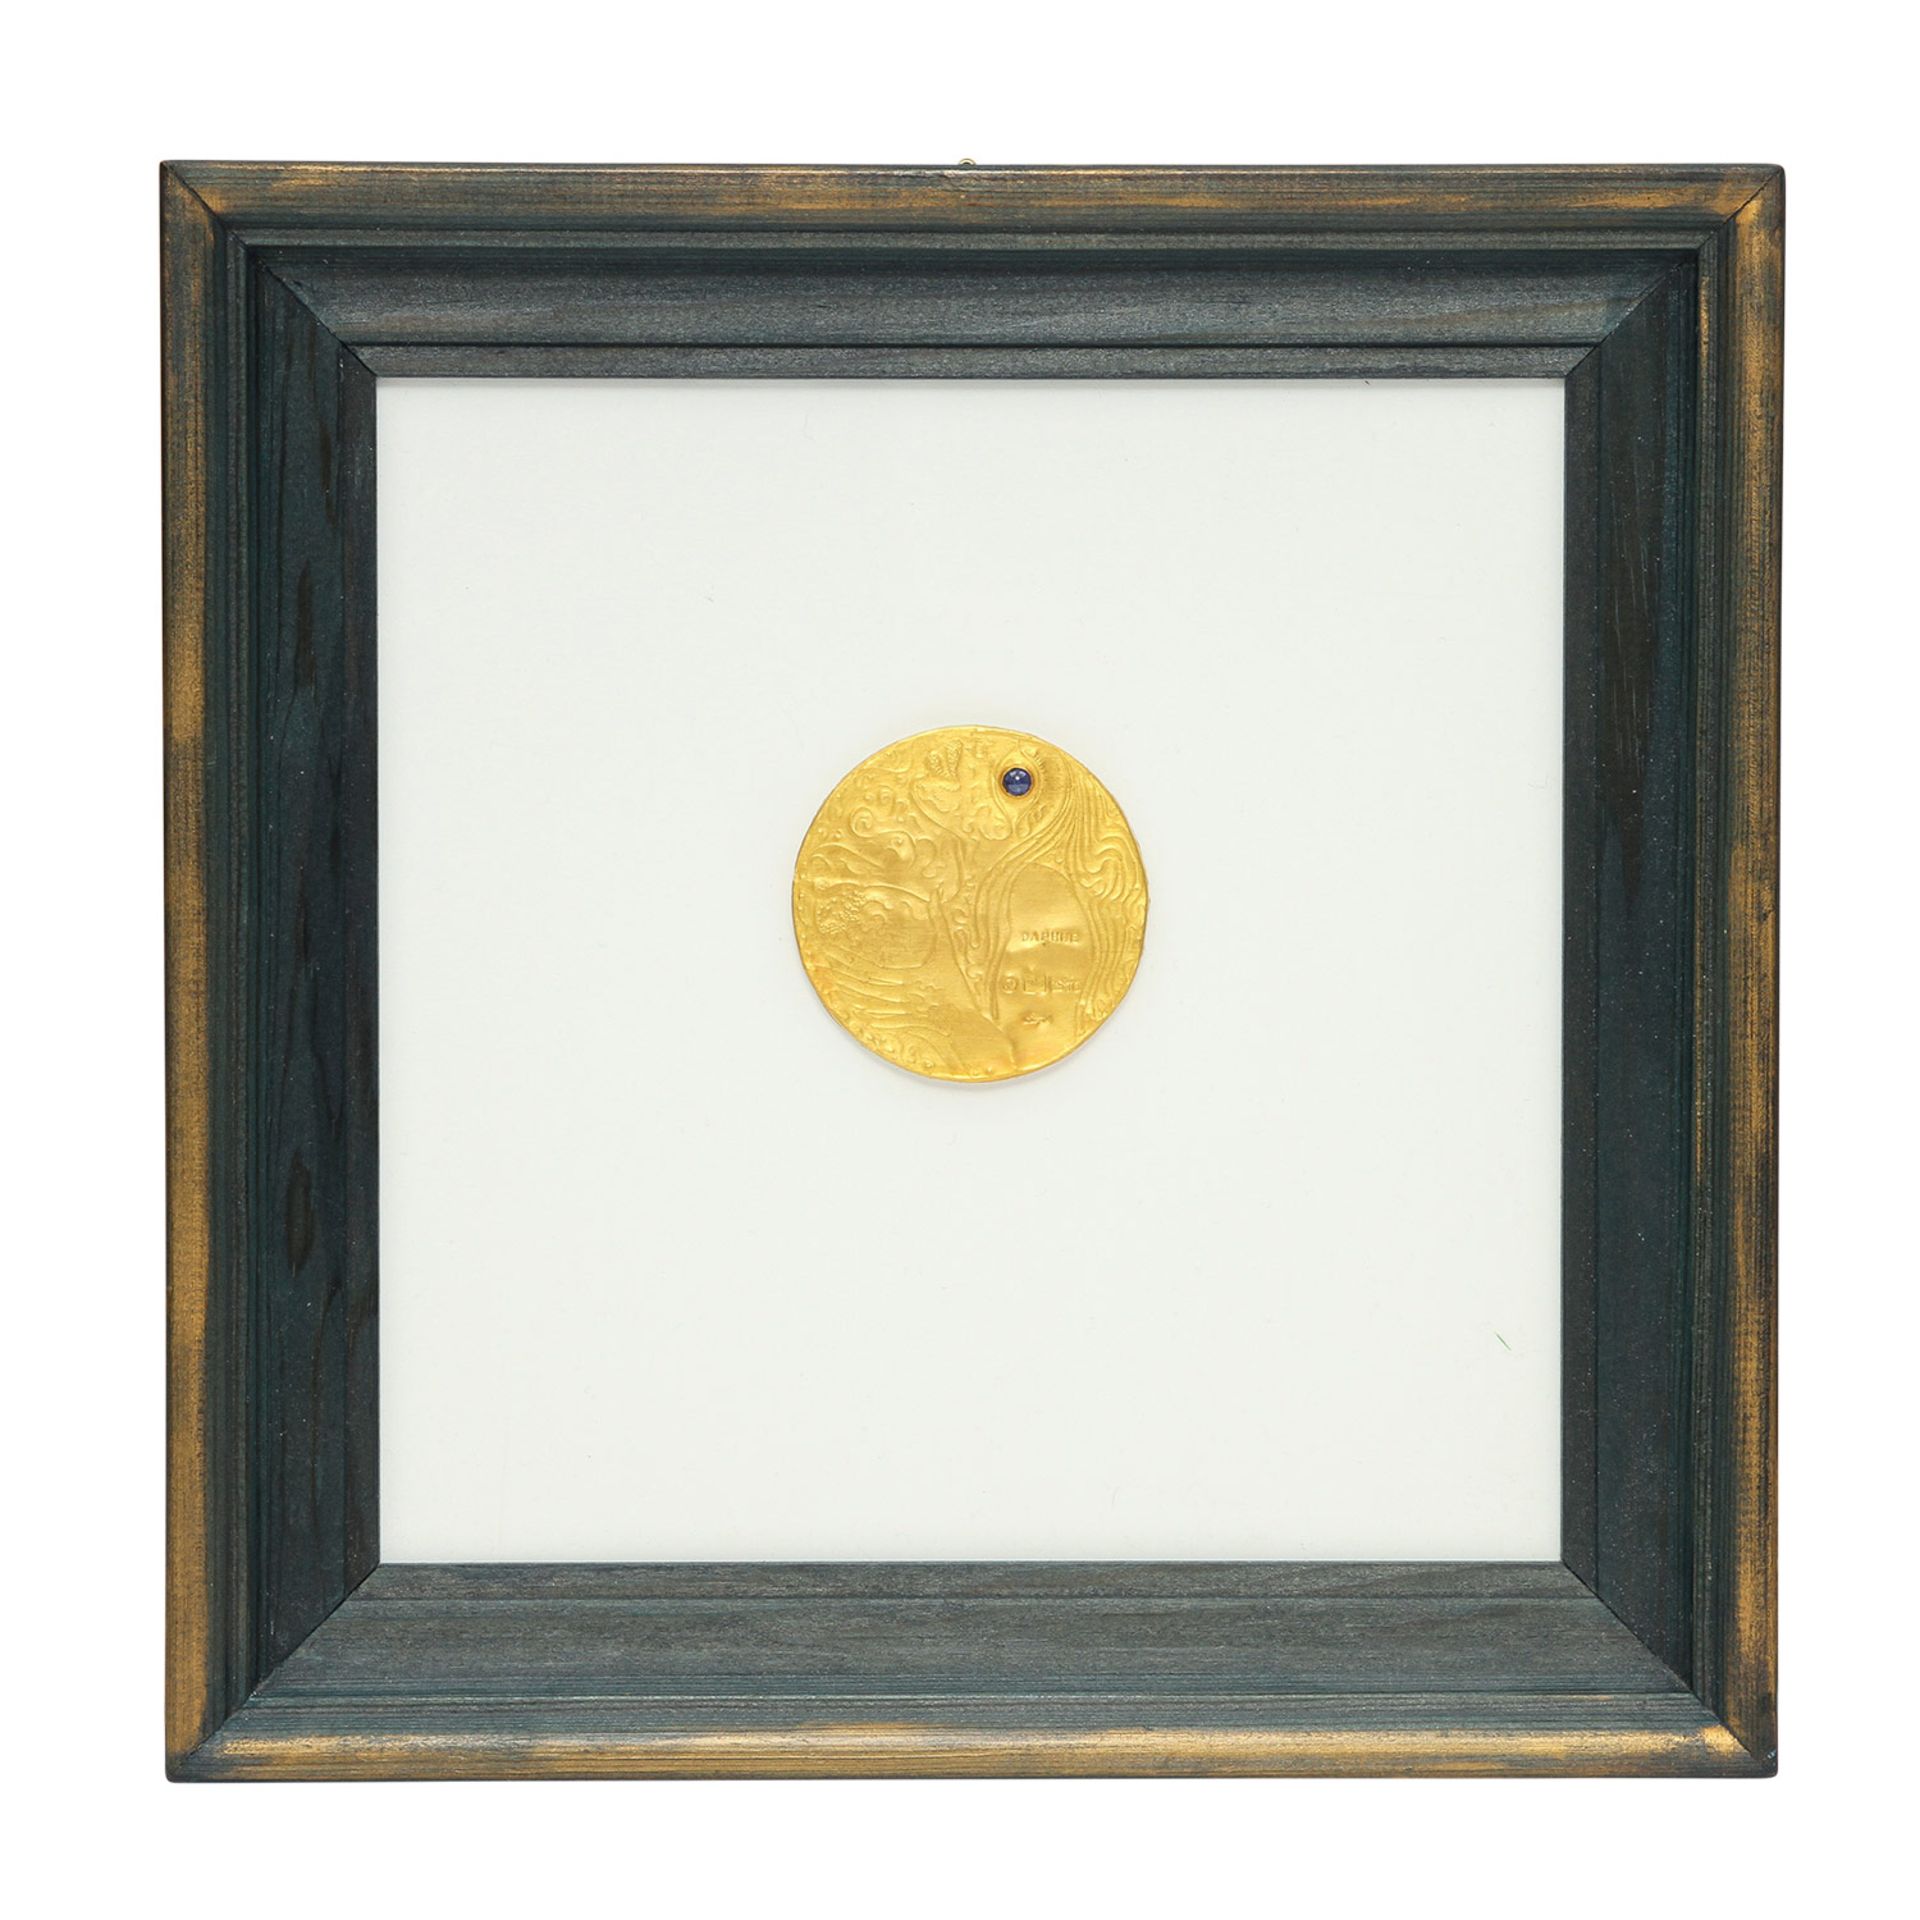 Goldminiatur "Daphne" (1970) von E. BURGEL,Gold 900, 1 Saphir, getrieben + ziseliert, auf Acryl,